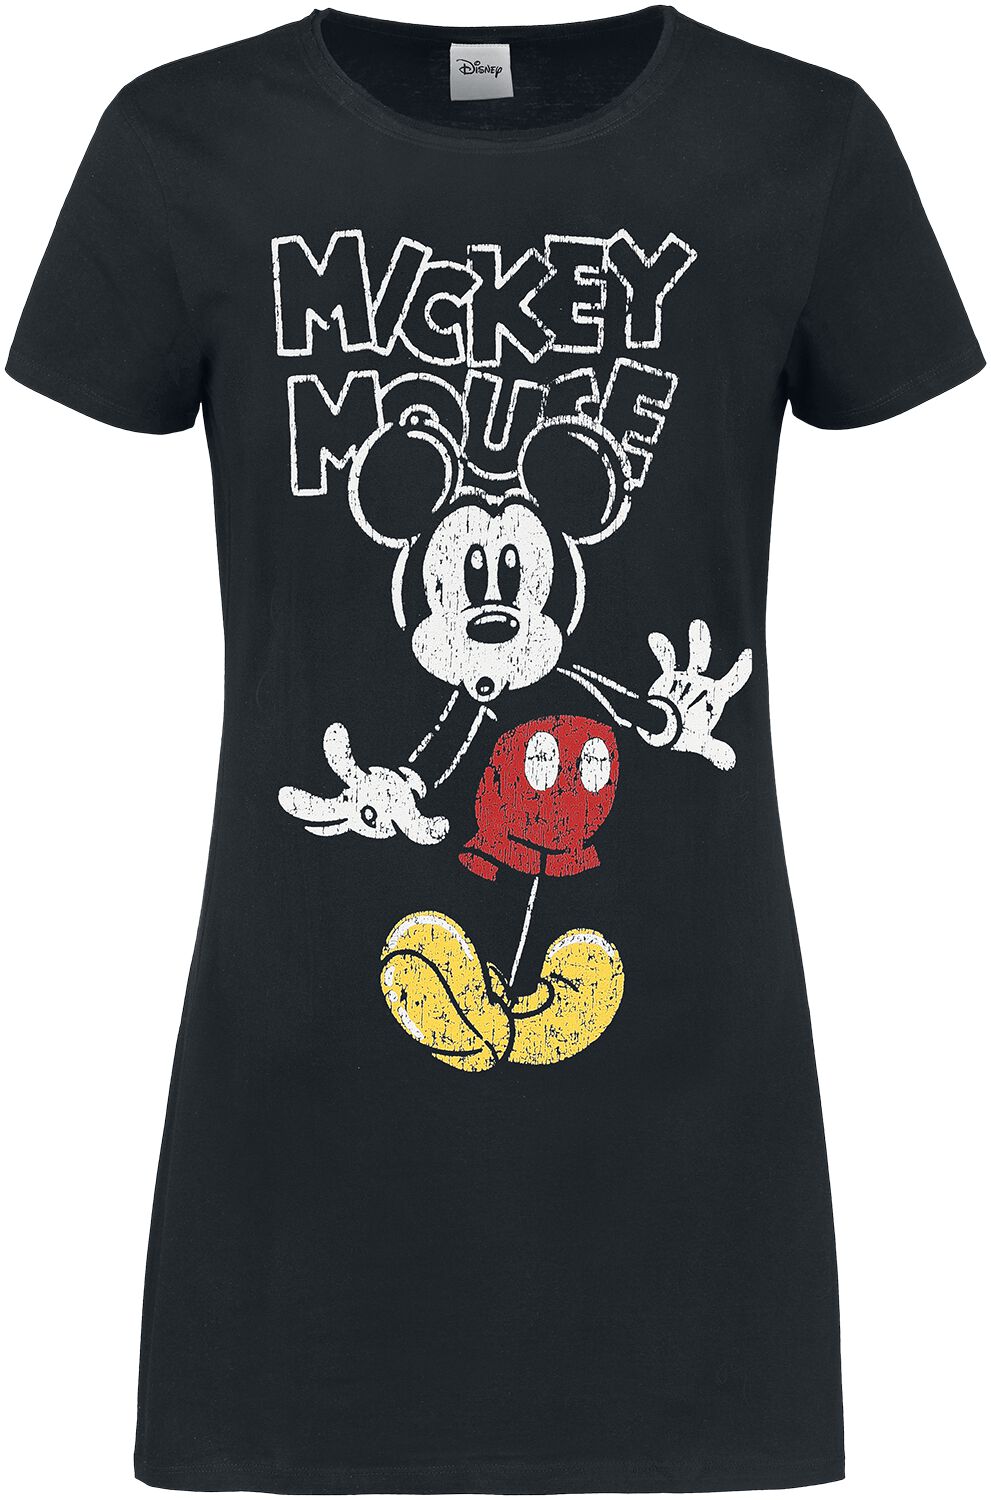 Mickey Mouse - Disney Kurzes Kleid - S bis XL - für Damen - Größe S - schwarz  - EMP exklusives Merchandise!